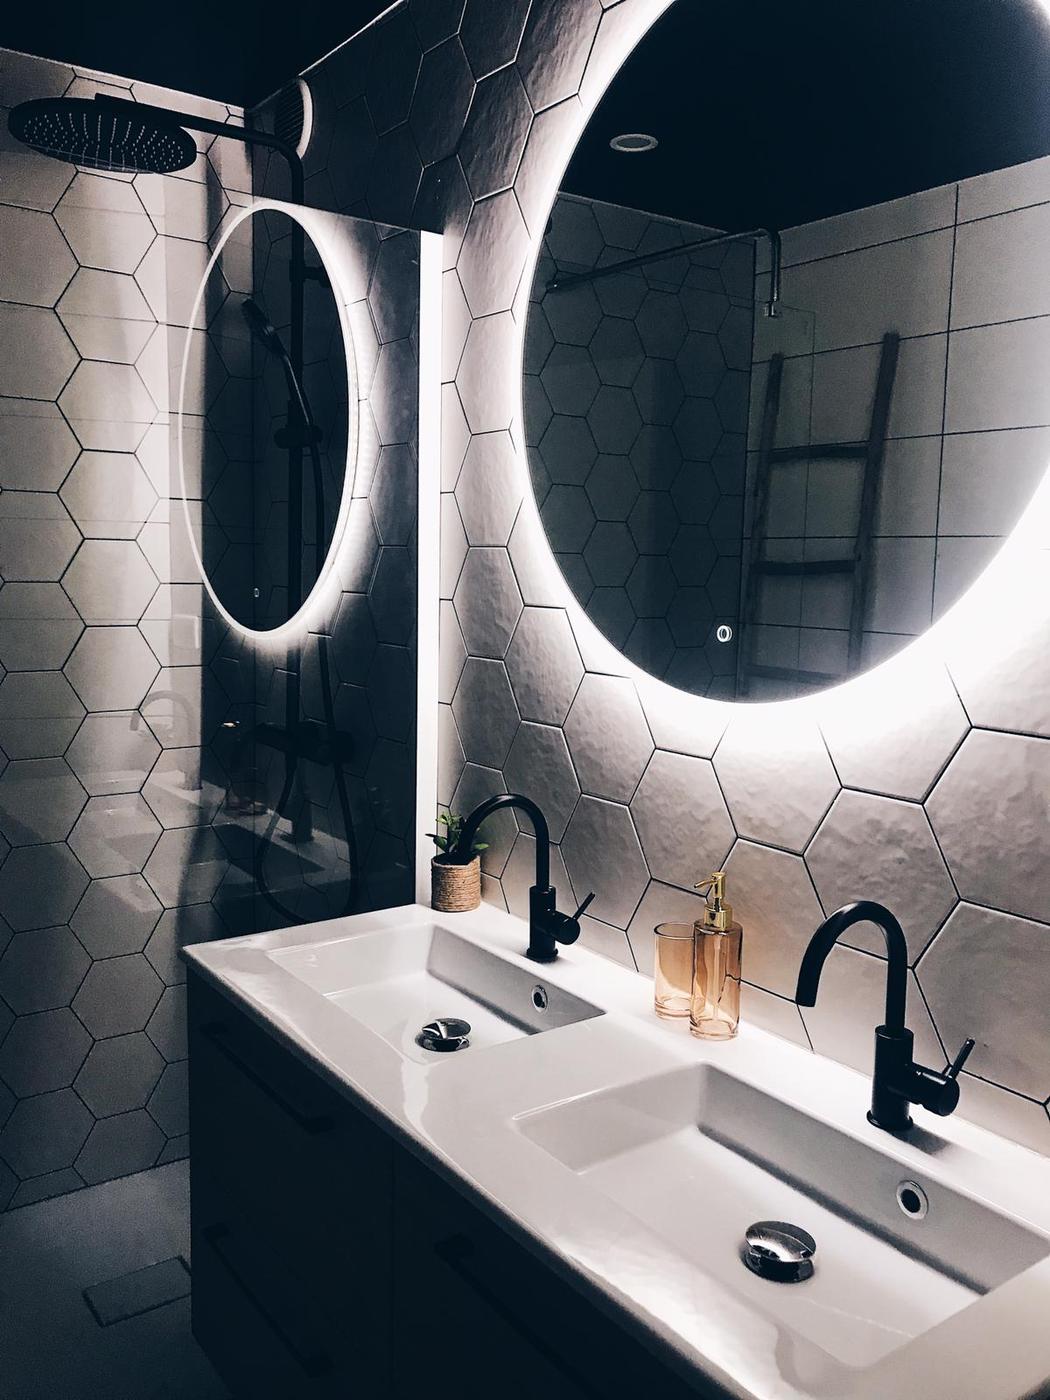 Carrelage en pierre blanc hexagonal 17.5x20 cm dans une salle de bain noire avec vasques modernes et miroir lumineux